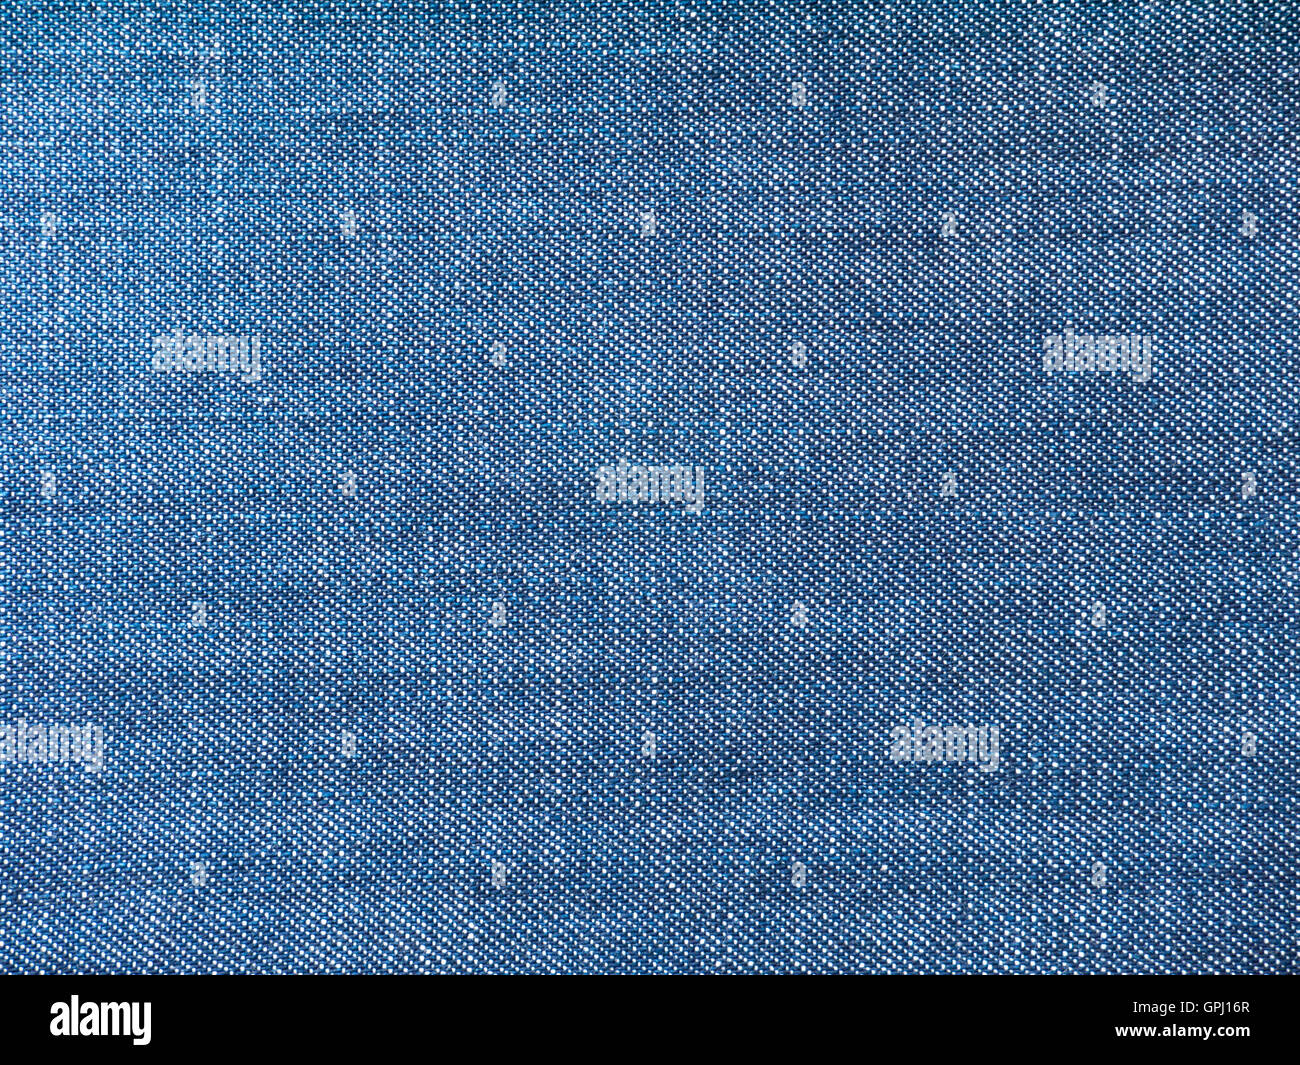 Medium blue striped washed denim fabric background Stock Photo - Alamy